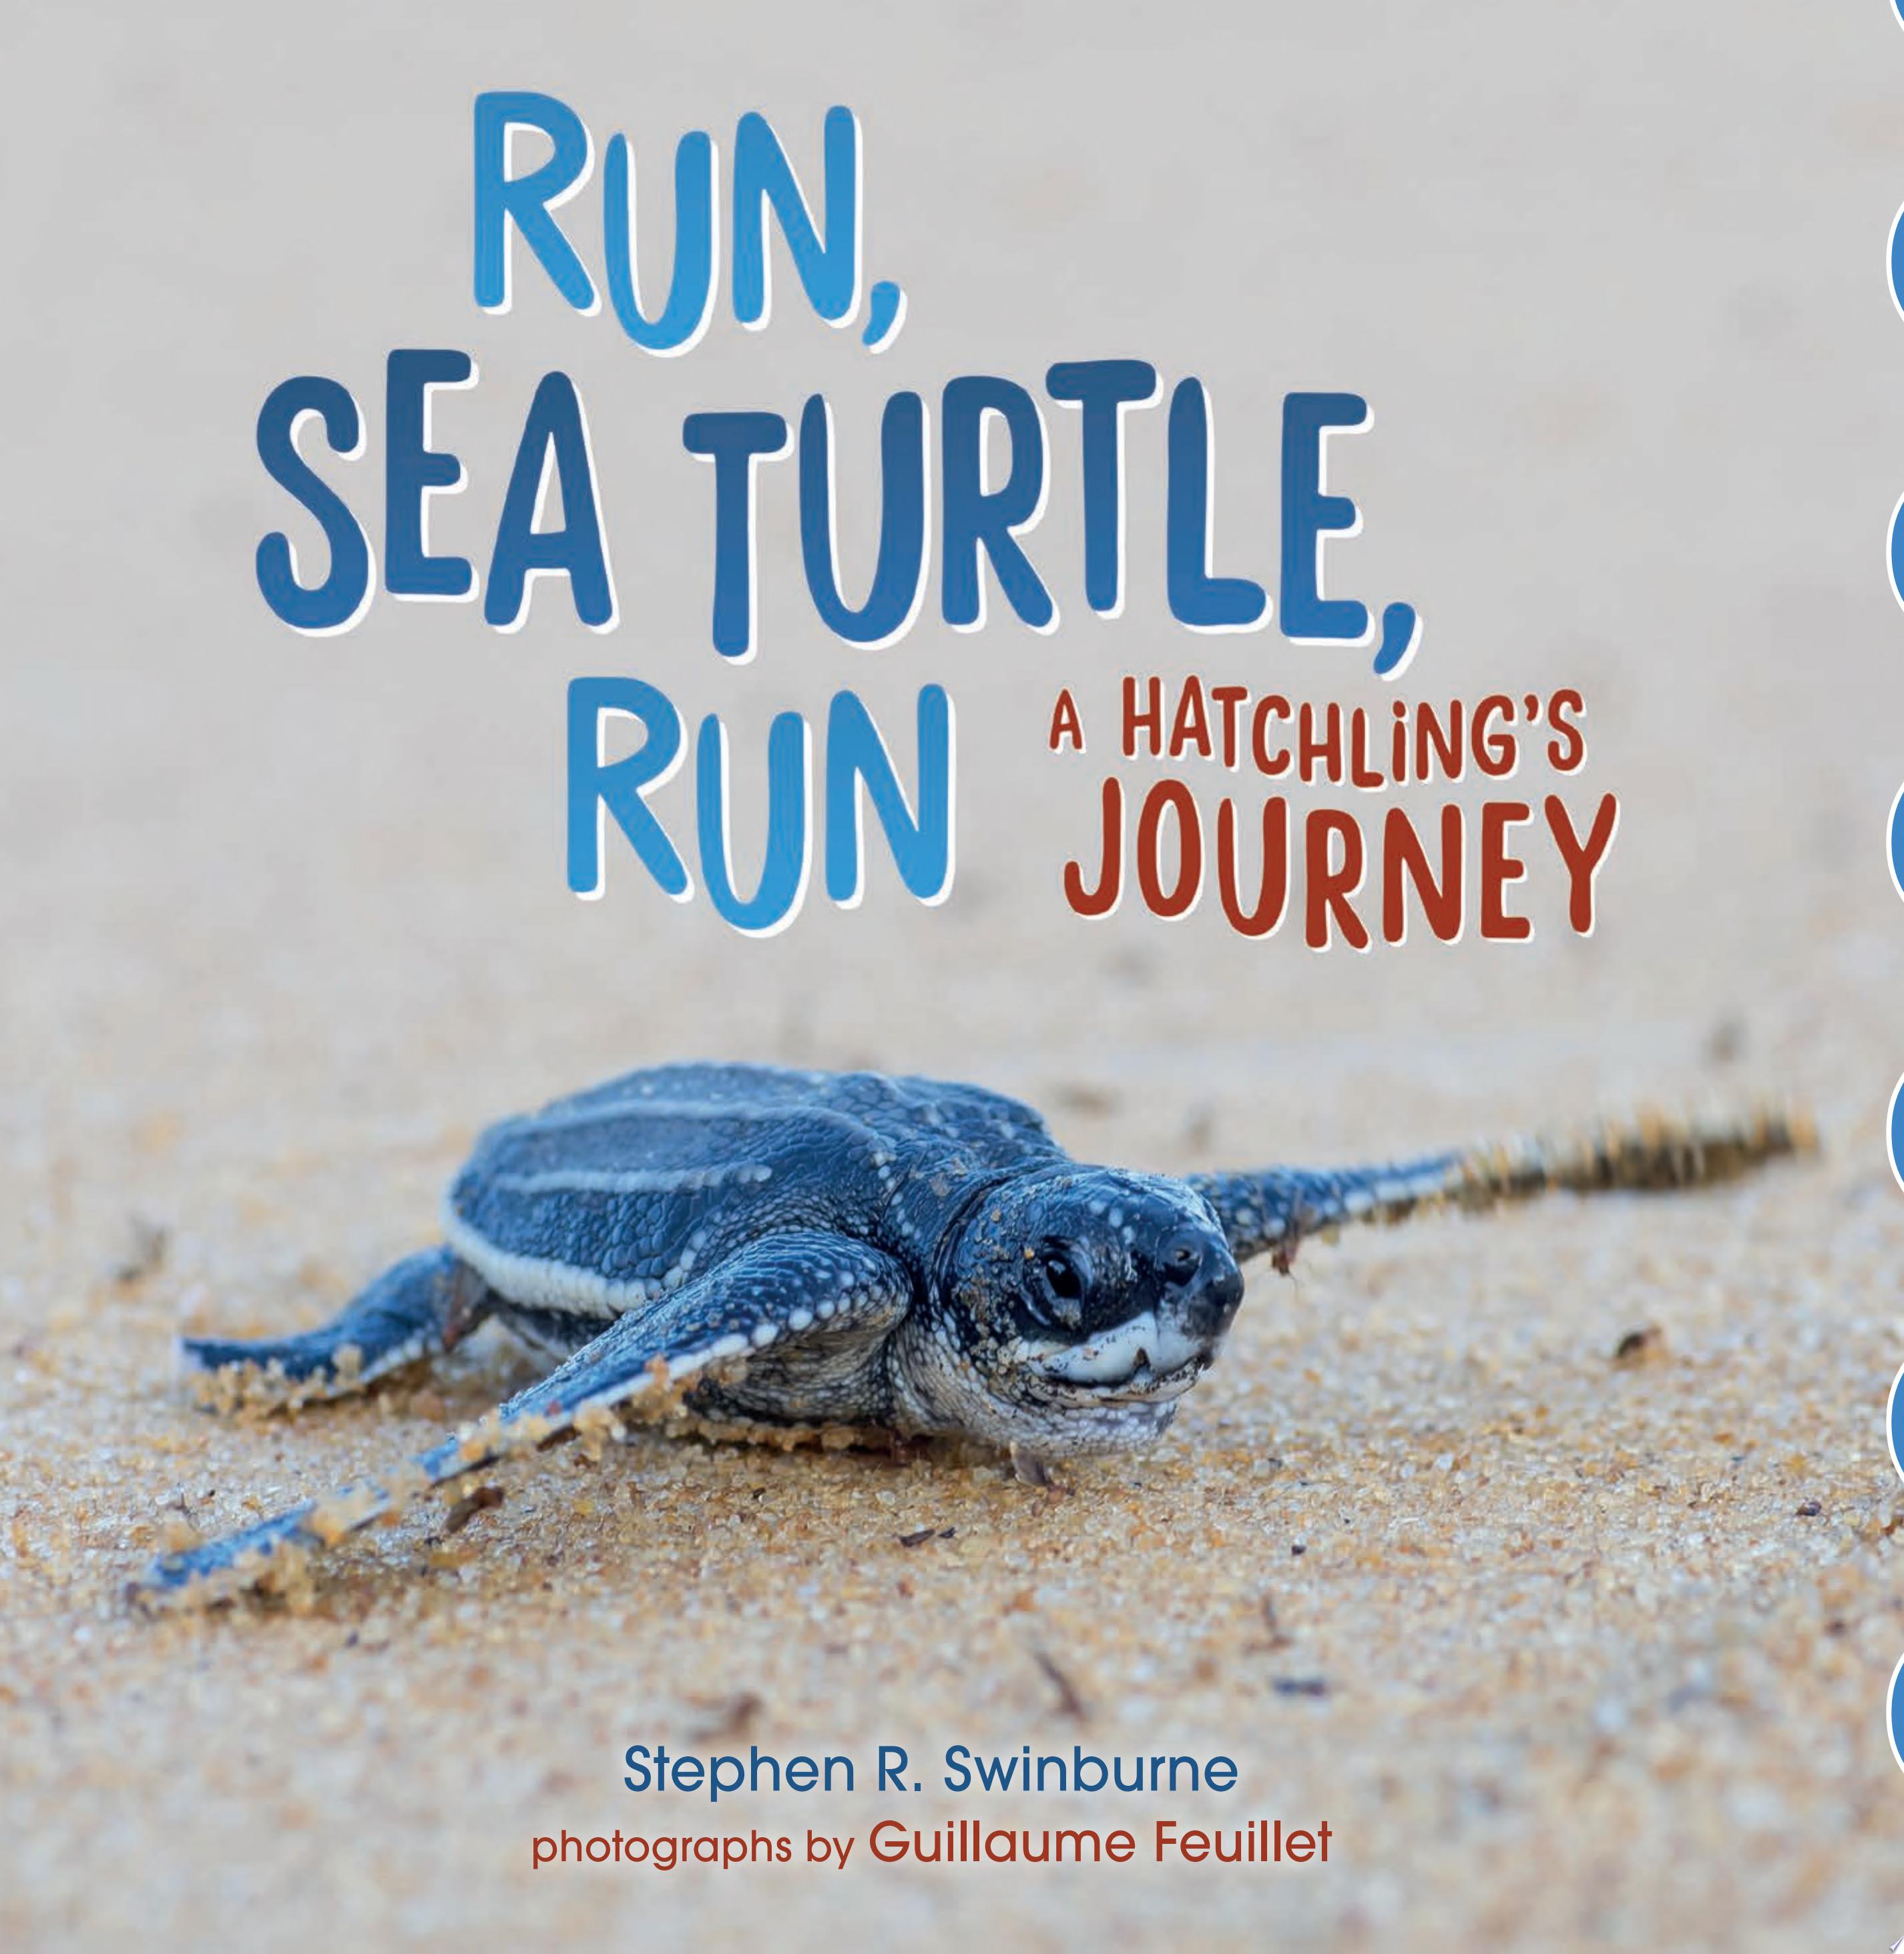 Image for "Run, Sea Turtle, Run"